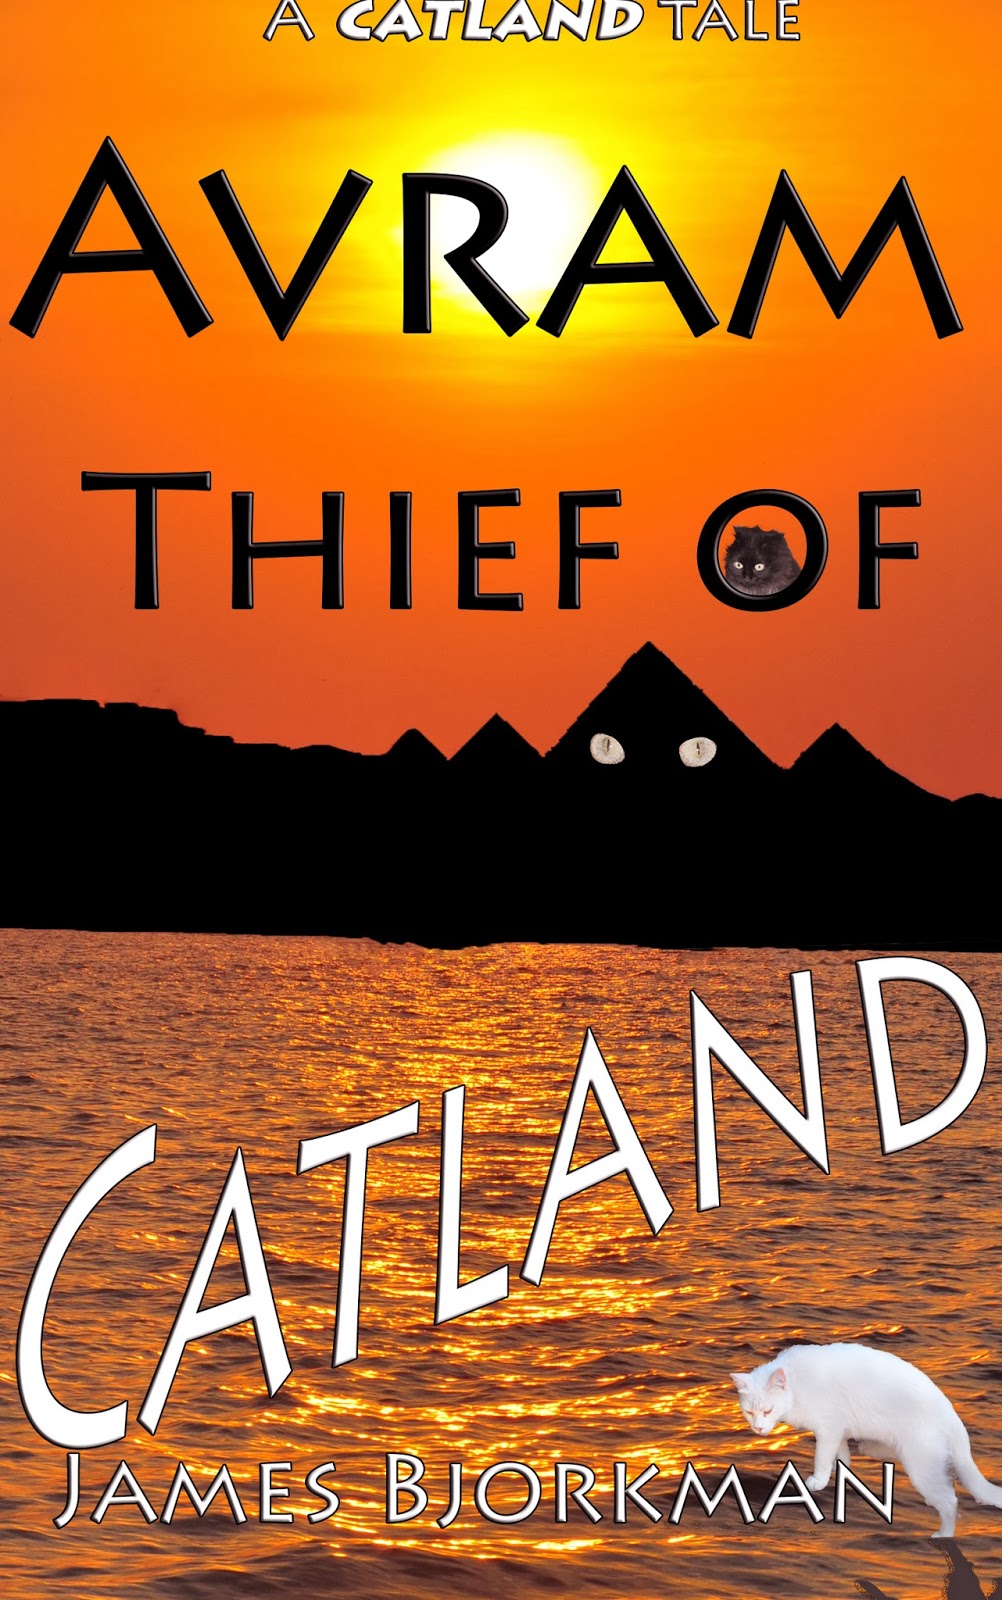 Avram Thief of Catland atlantis.filminspector.com